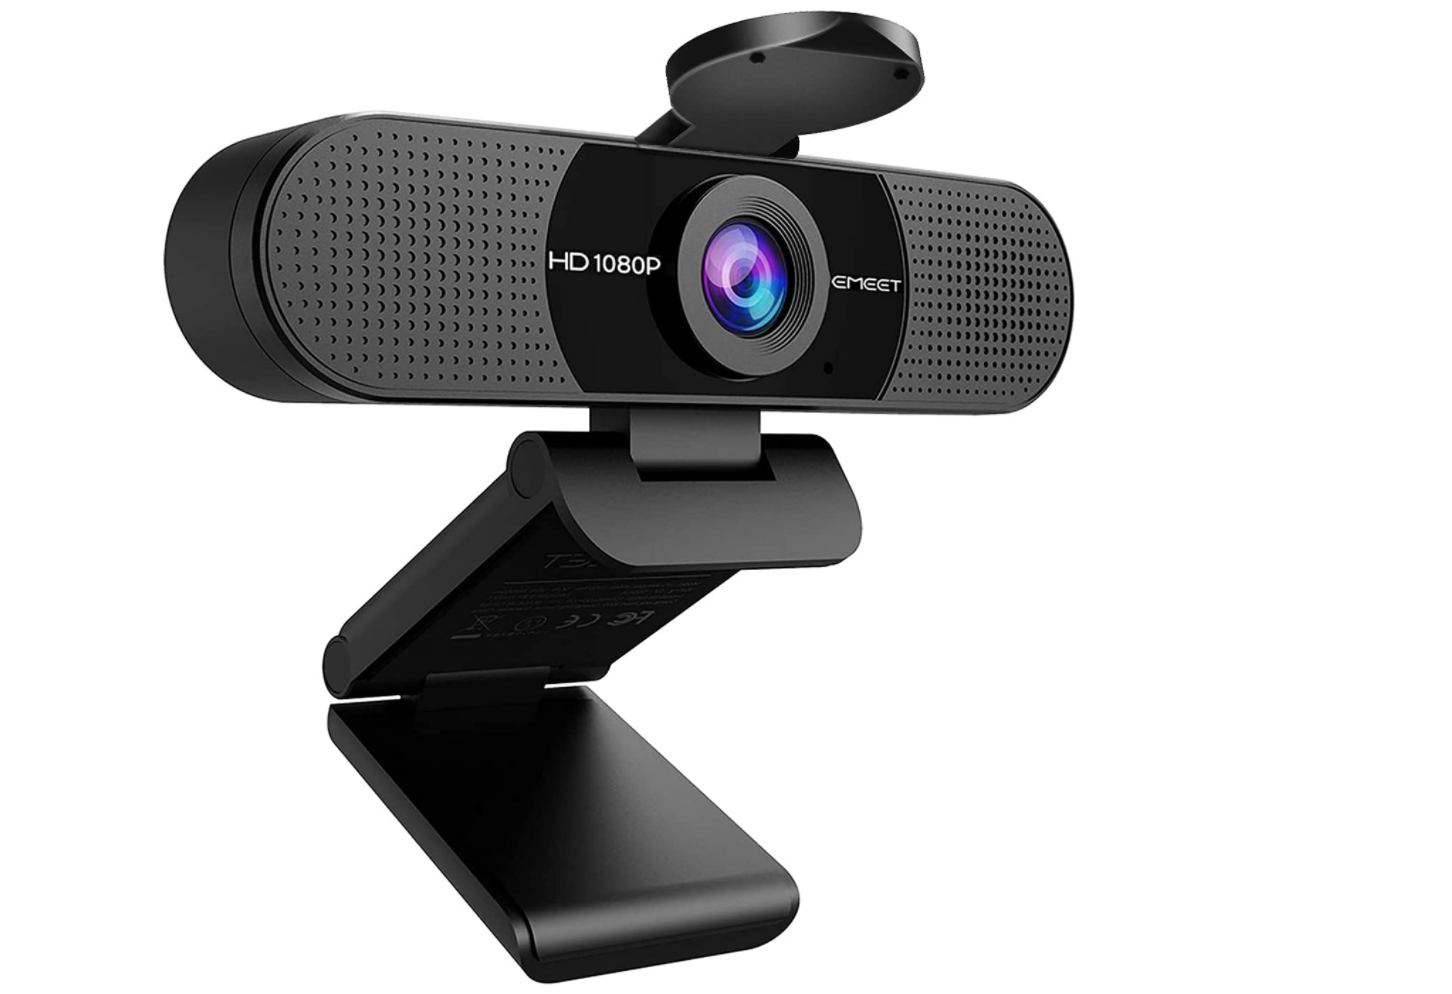 eMeet C960 Webcam - Best budget webcam